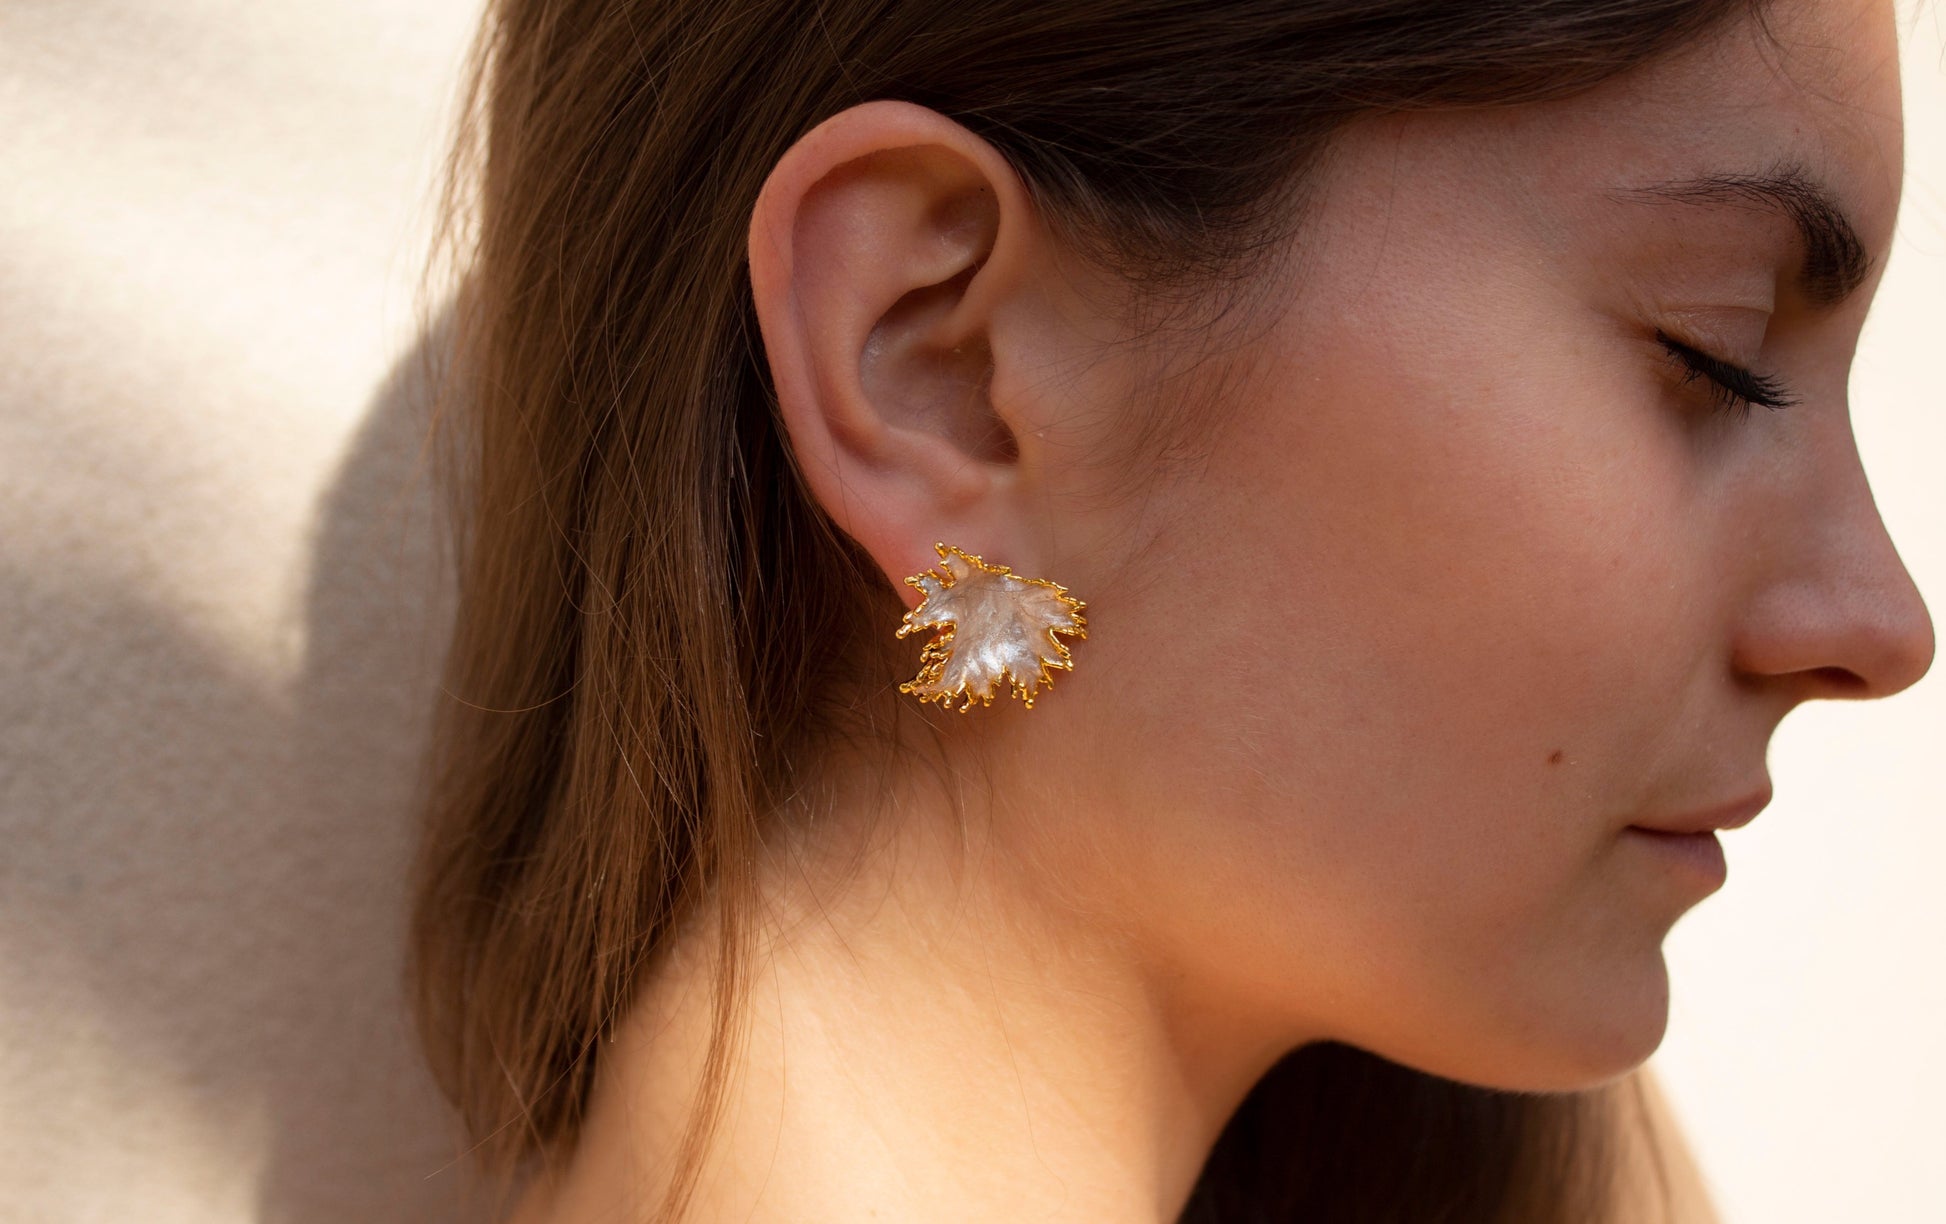 Artemis earrings, Diana leaf earrings